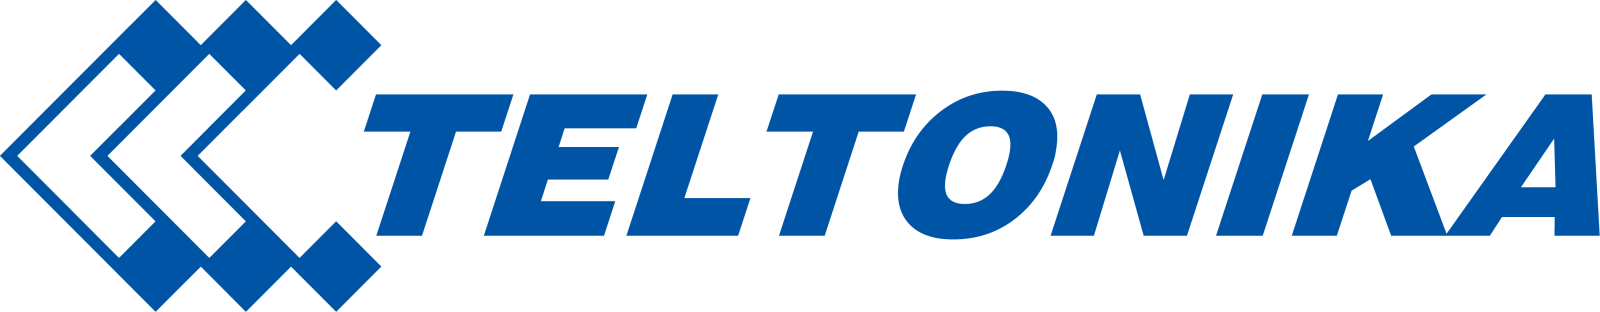 Teltonika-logo.png (2954580)